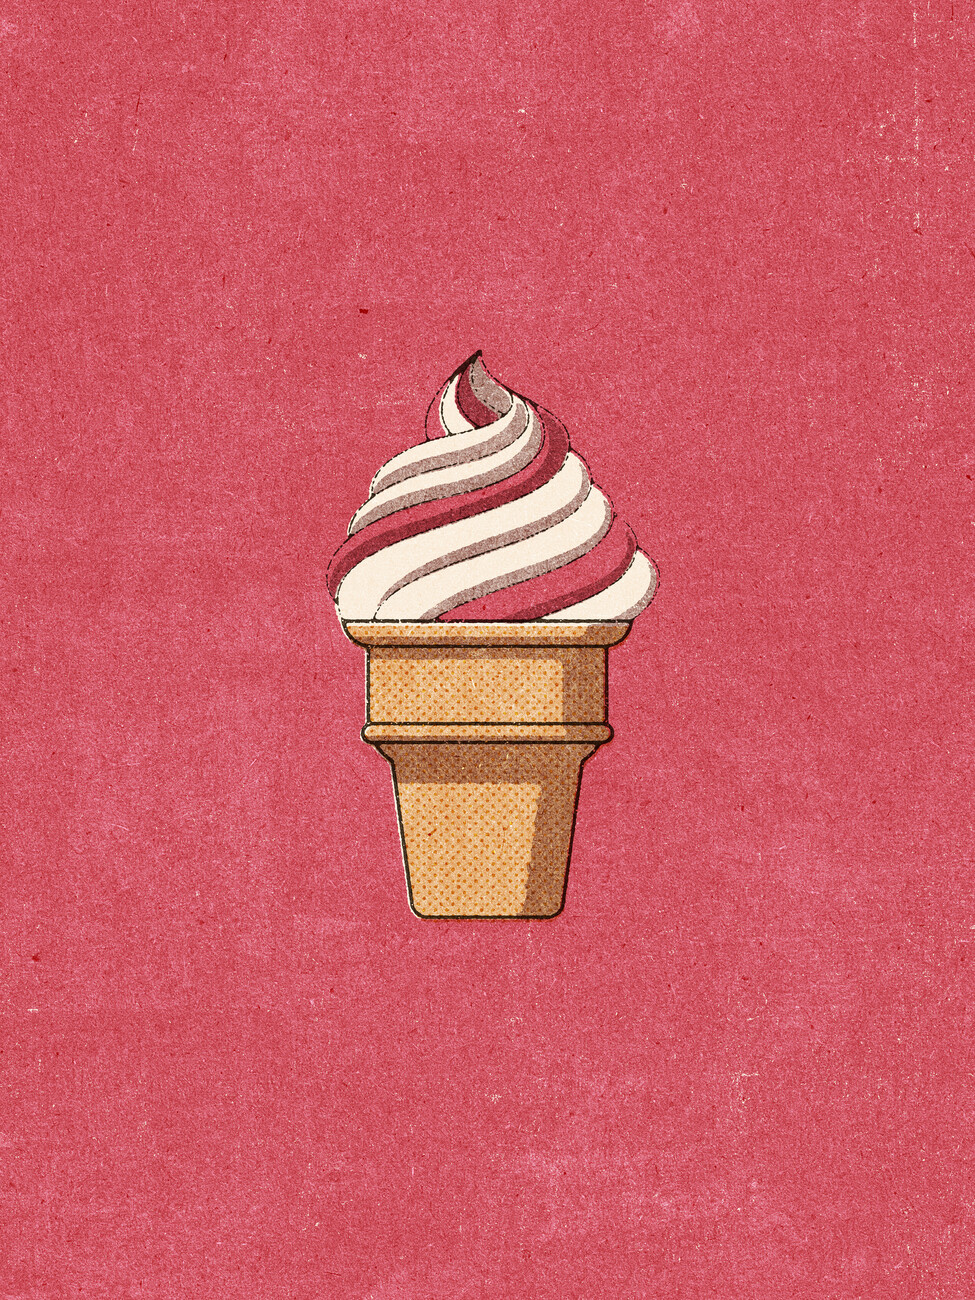 Illustration FOOD / Ice Cream